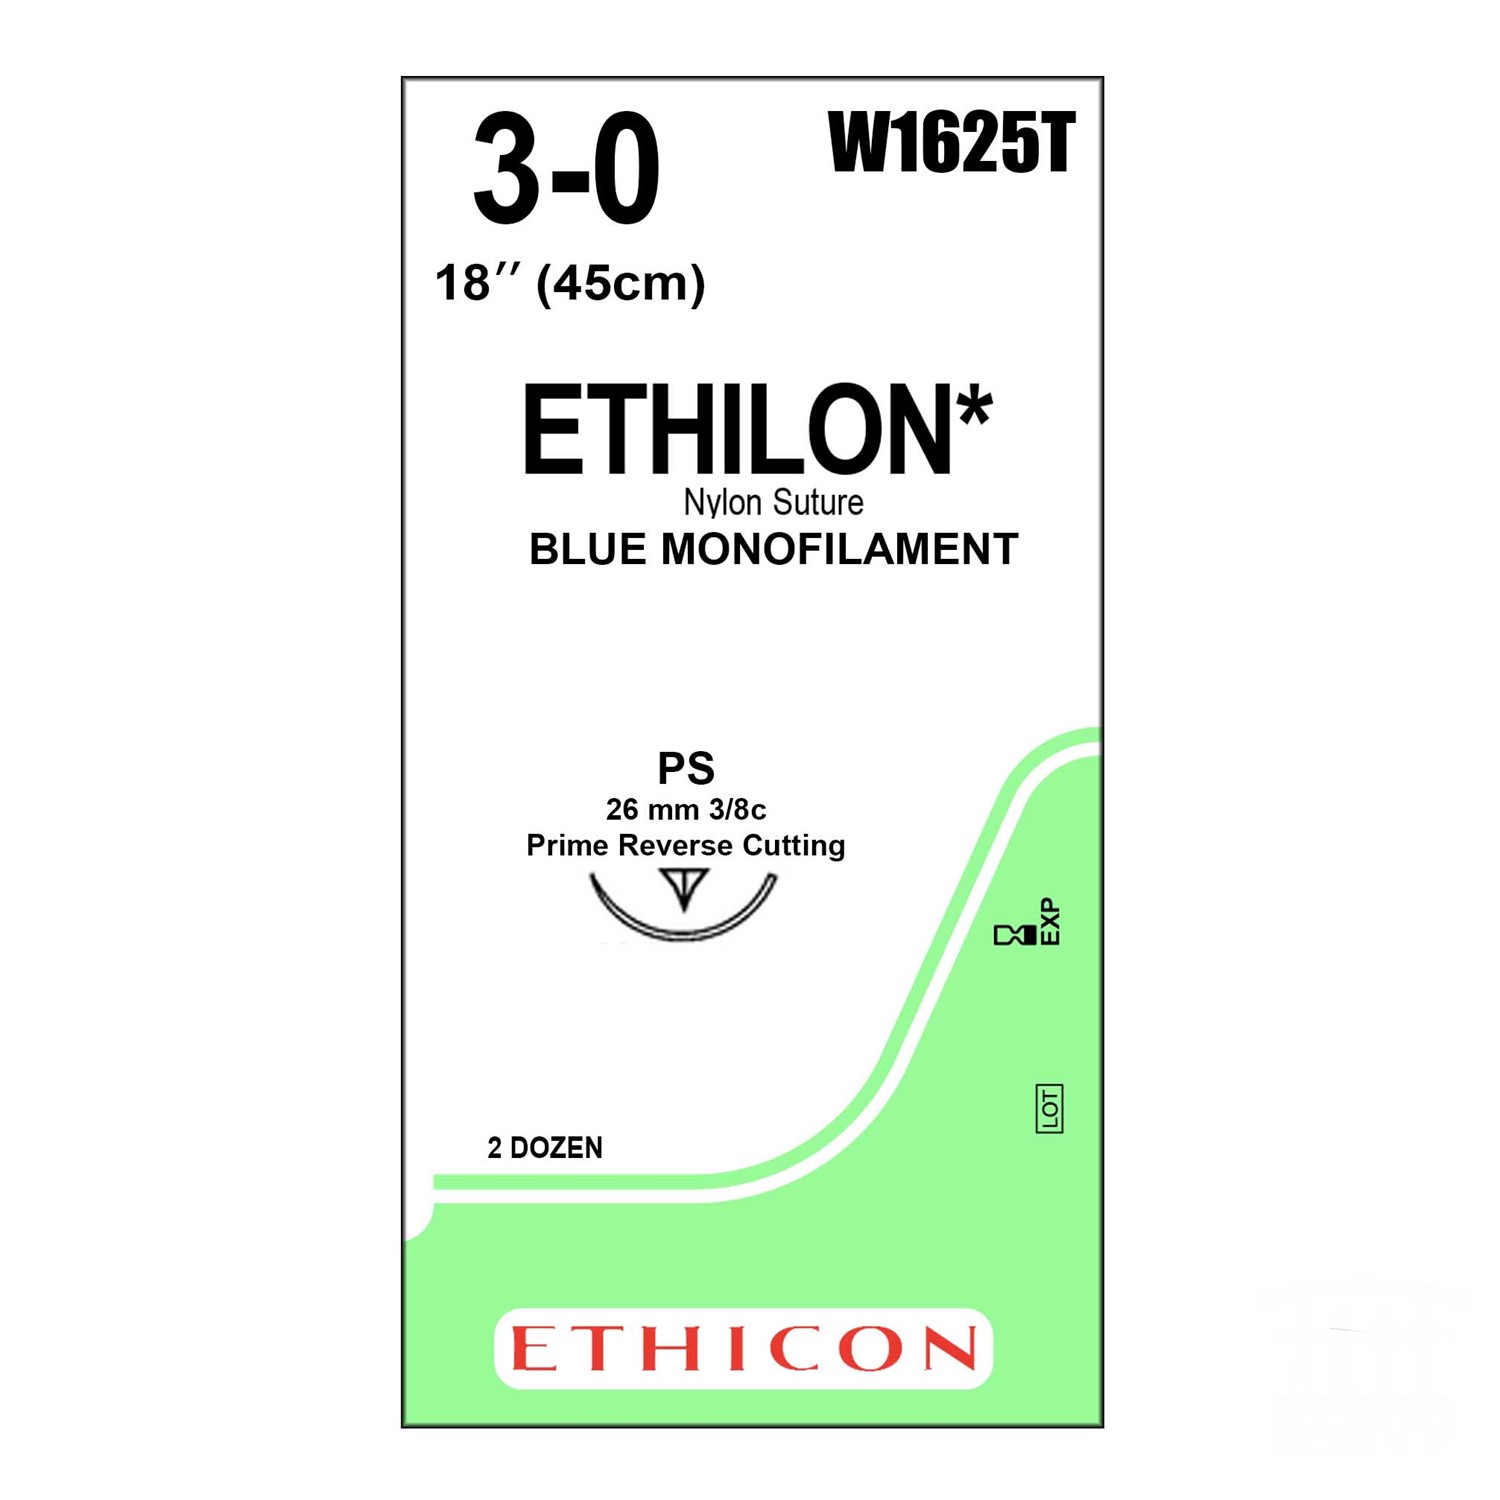 Ράμμα Ethilon No 3/0 με βελόνα 26mm Αντ. Κόπτουσα Πλαστικής P 3/8c,μήκος ράμματος 45cm